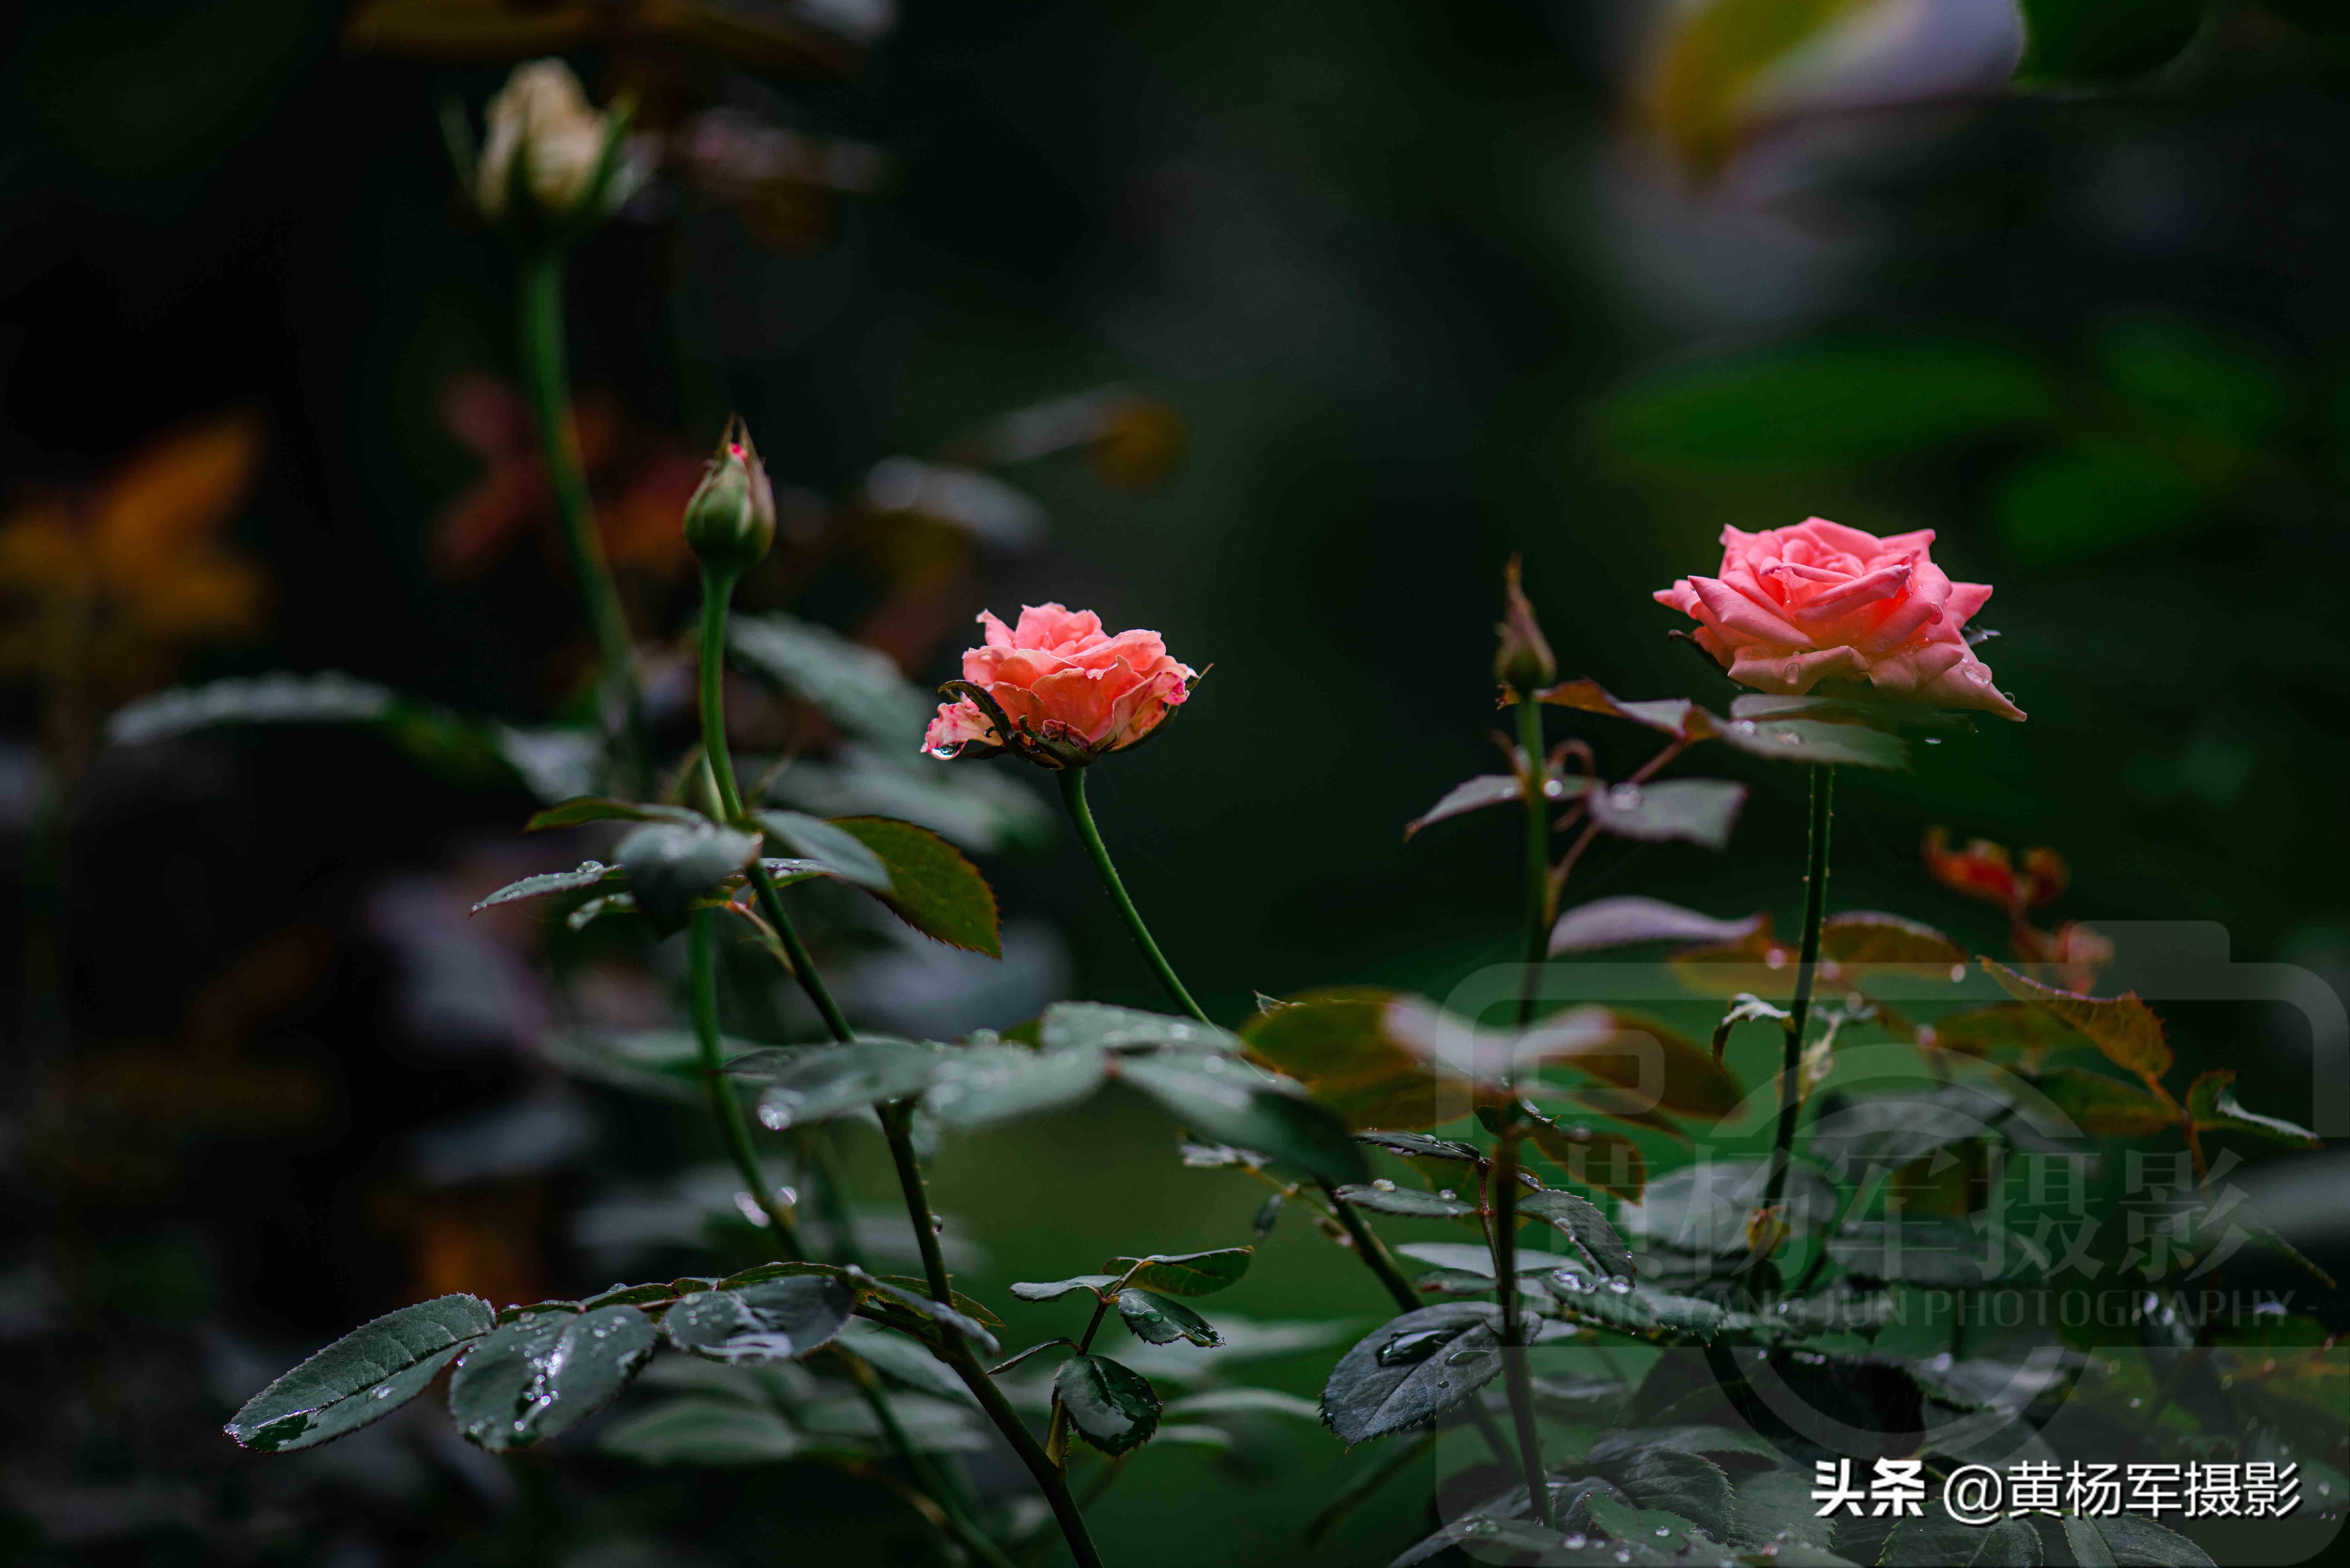 雨中娇艳盛开的玫瑰花,娇媚百态的花朵格外迷人,花朵芬芳自然美